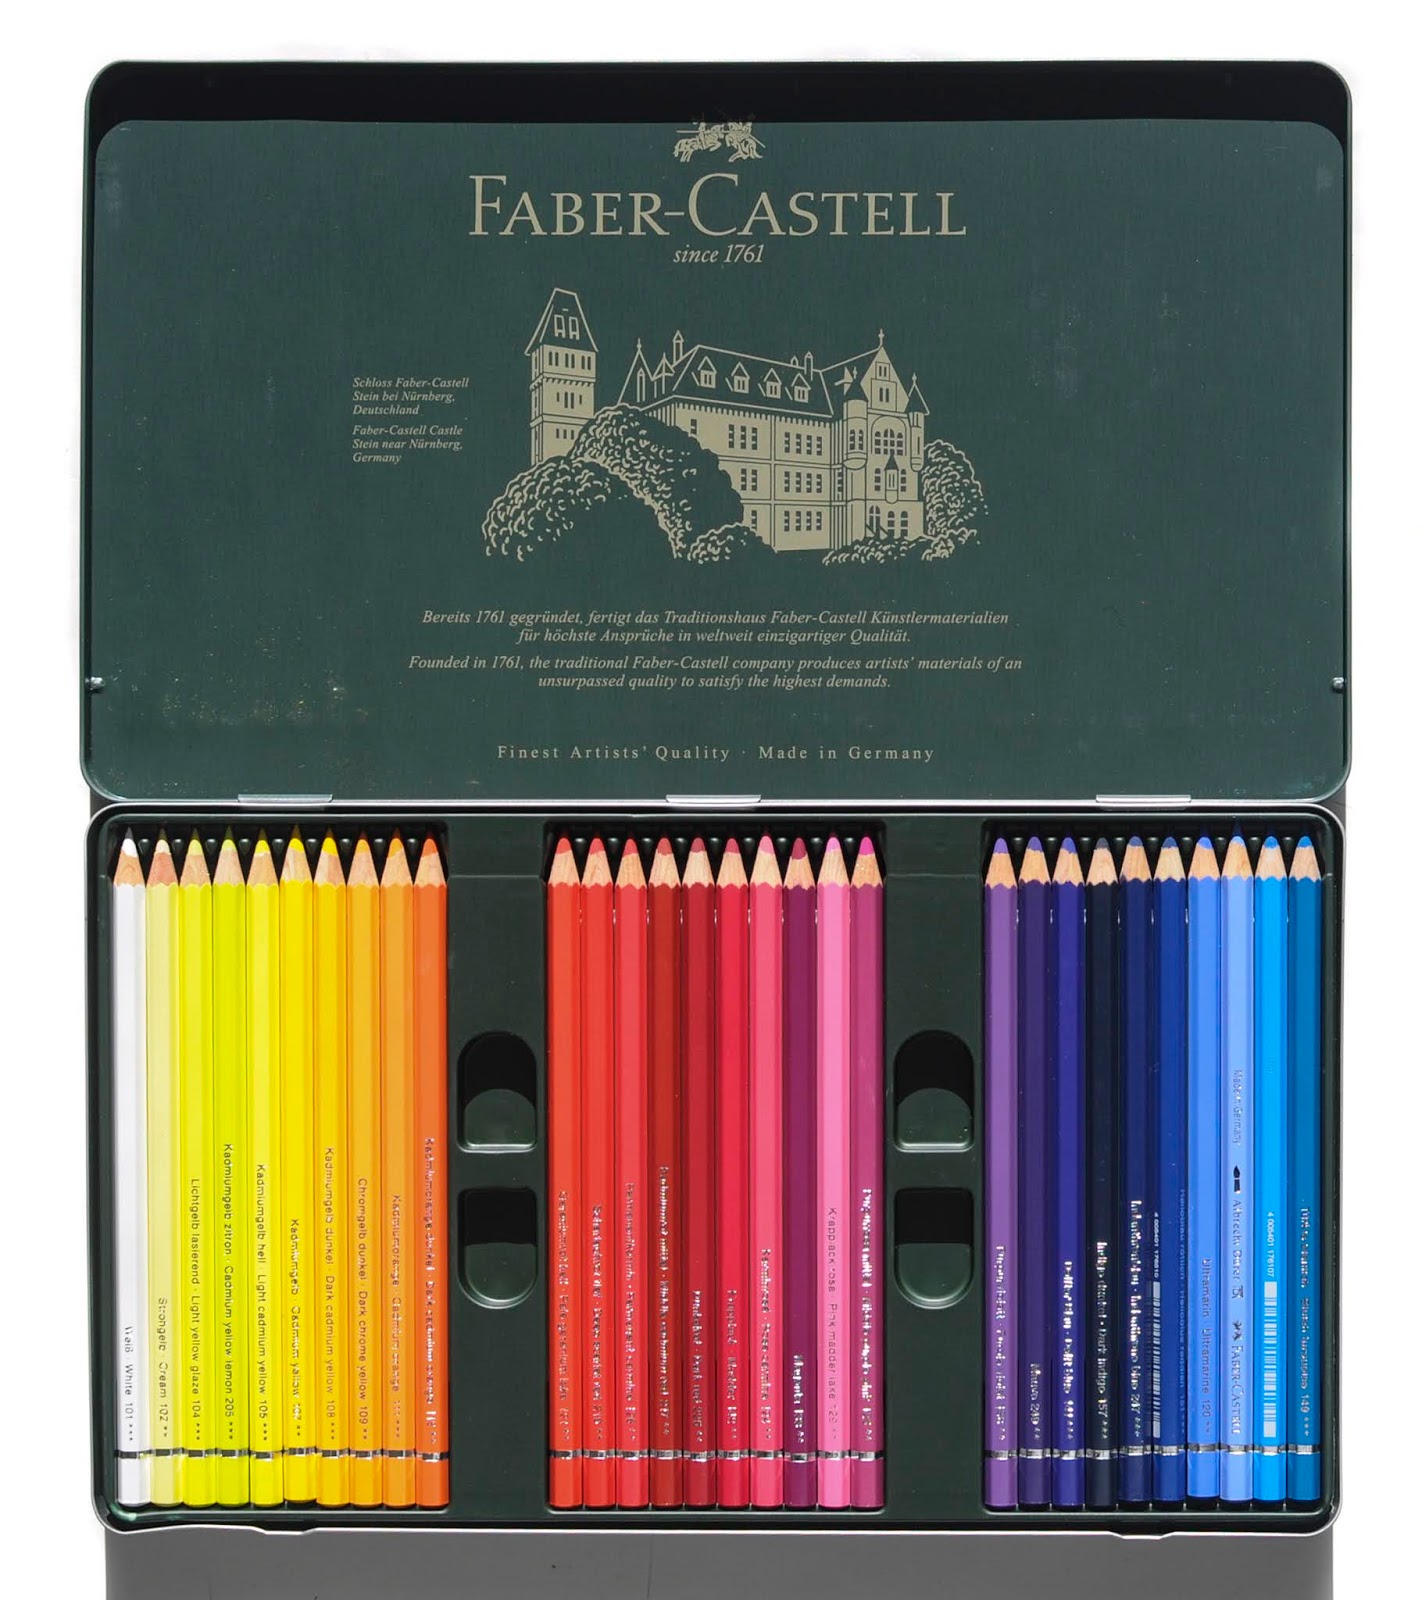 Faber Castell 60 Albrecht Duerer Aquarelle Sticks by pesim65 on DeviantArt